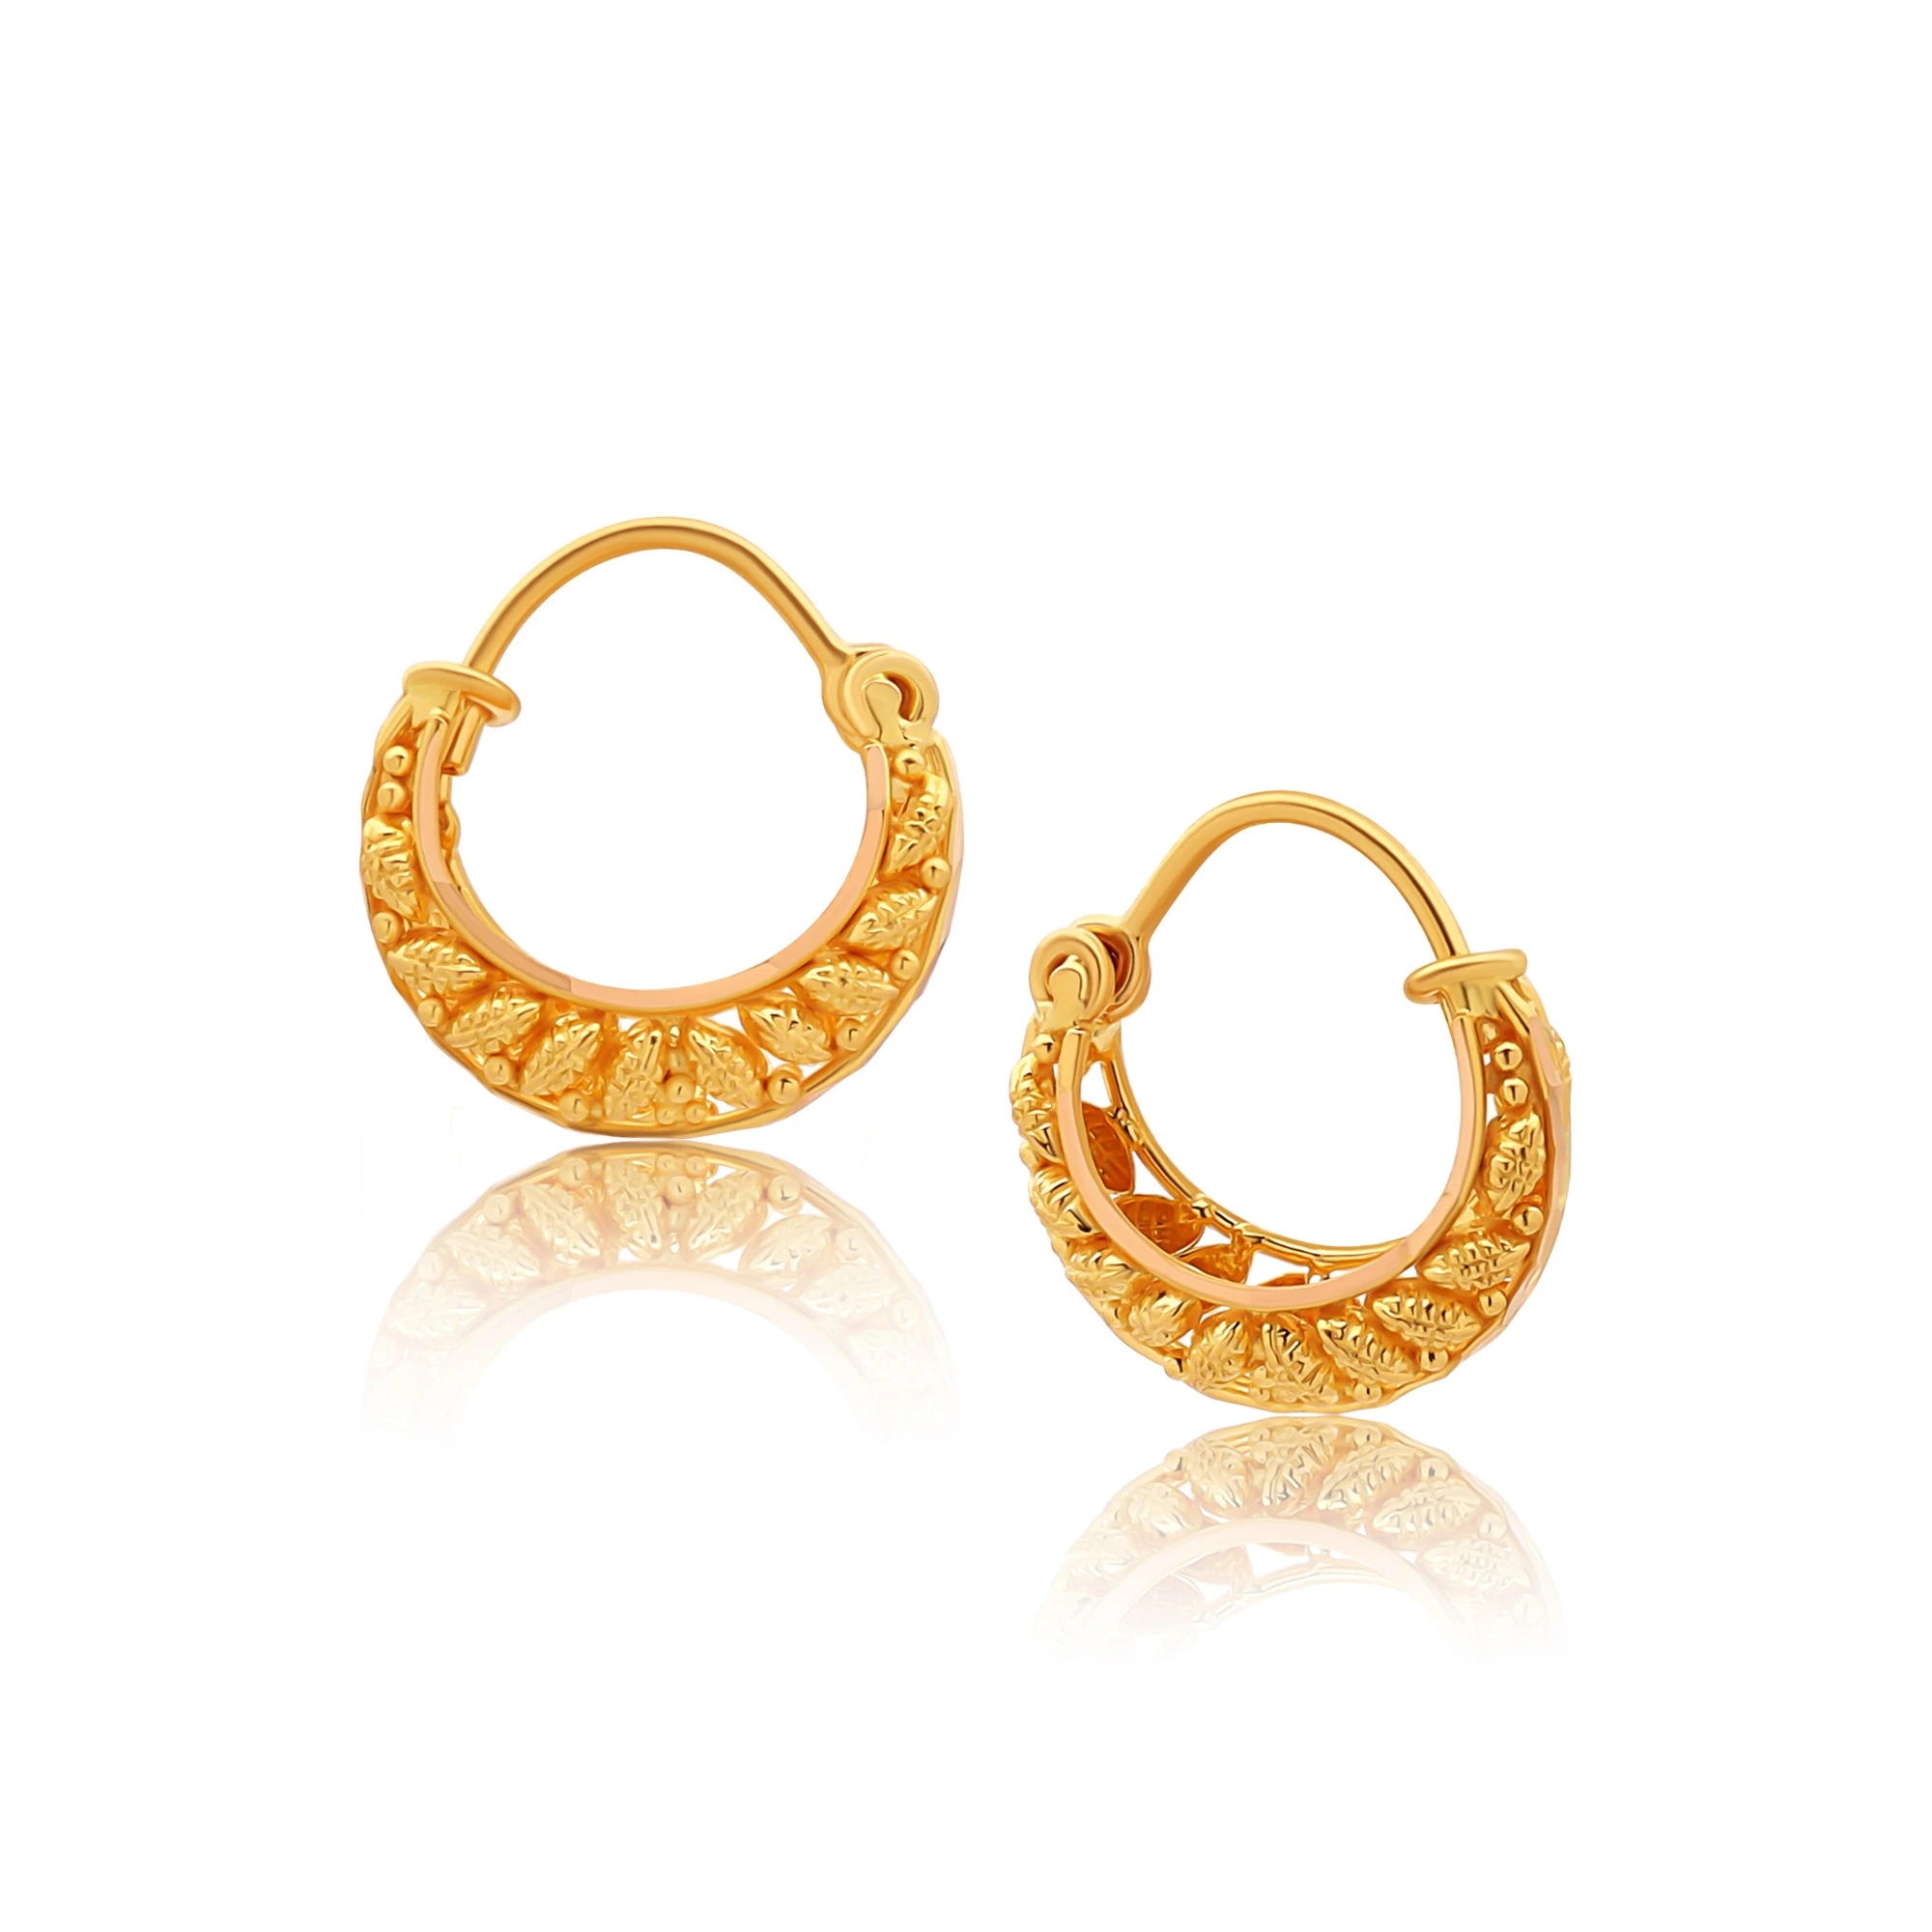 22K Gold Hoop Earrings (Ear Bali) For Baby - 235-GER16079 in 1.500 Grams